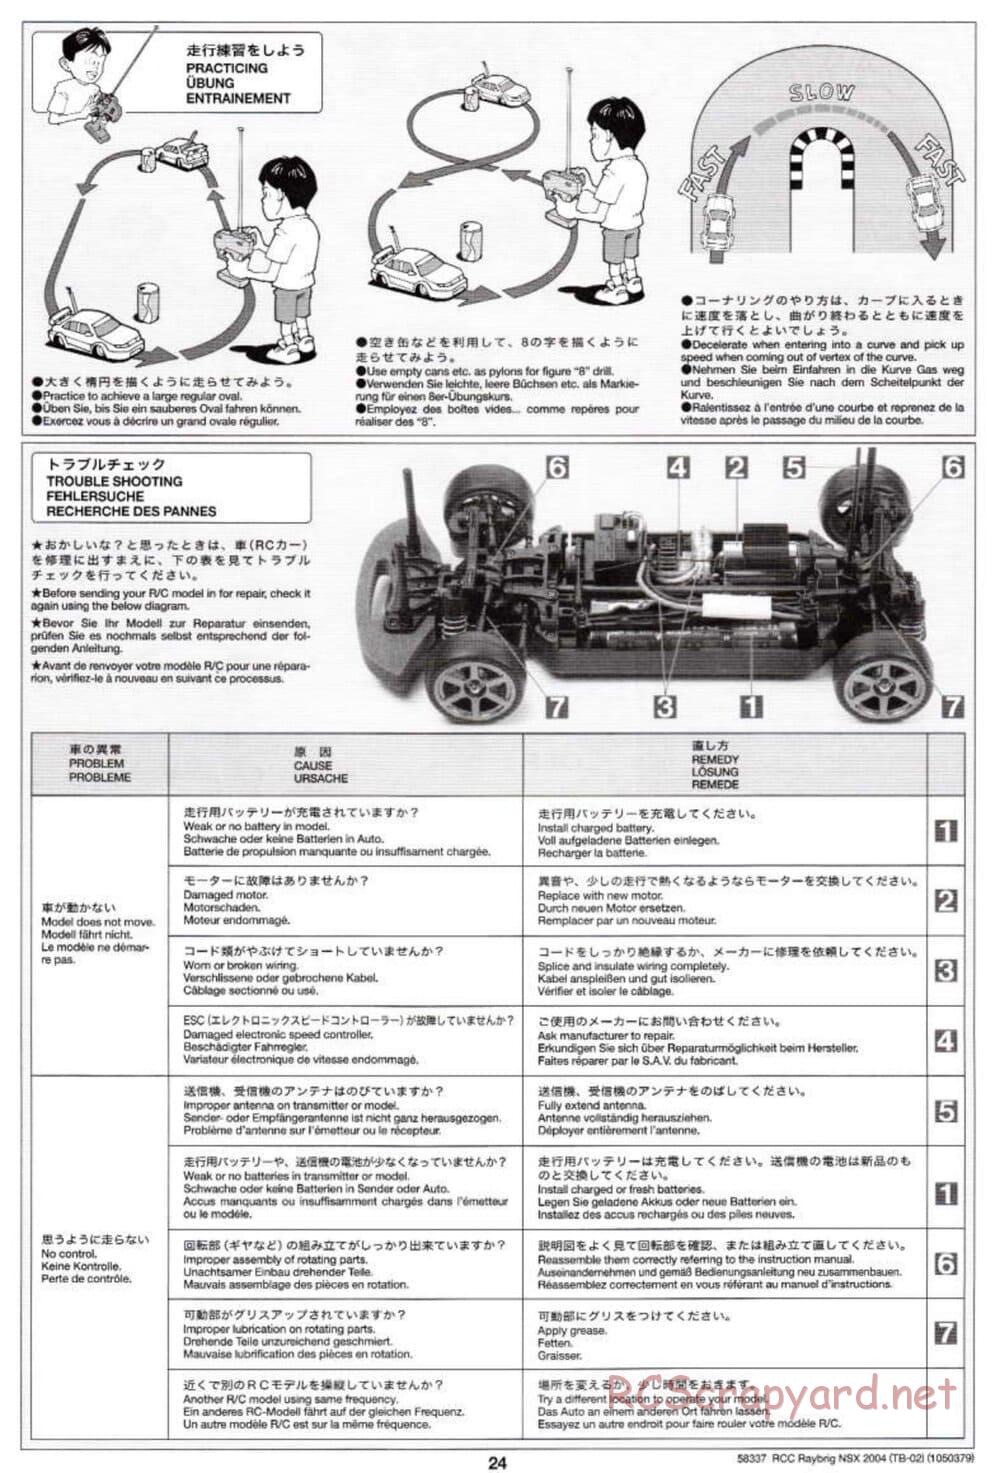 Tamiya - Raybrig NSX 2004 - TB-02 Chassis - Manual - Page 24